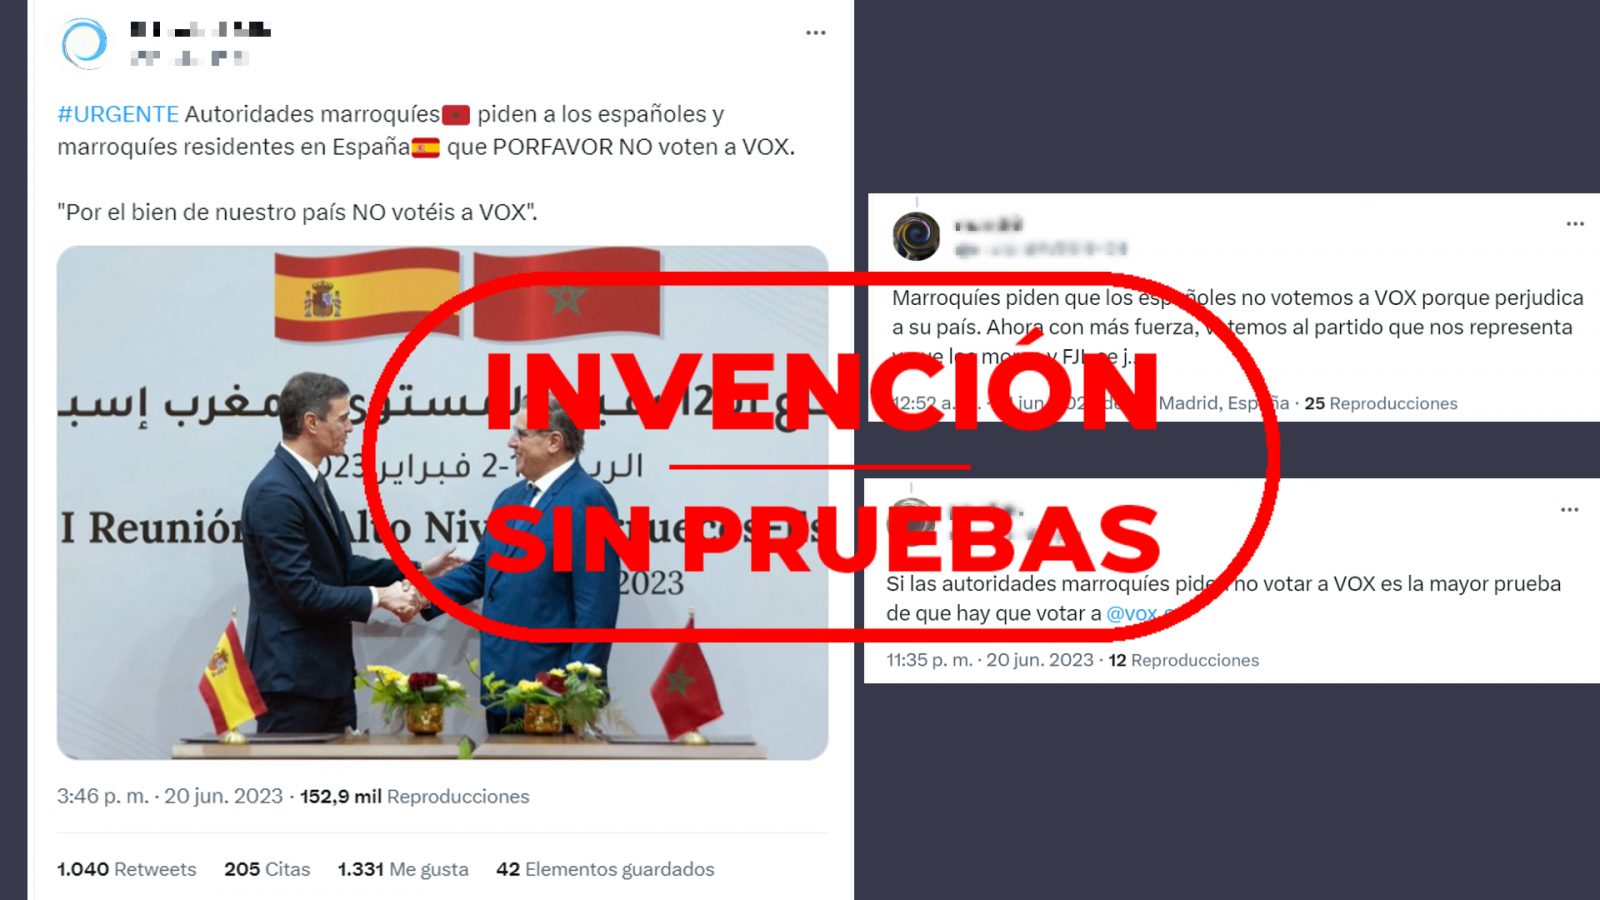 Tuits que difunden la invención sin pruebas que asegura que las autoridades marroquíes están pidiendo que no se vote a Vox, con el sello Invención sin pruebas de VerificaRTVE en rojo